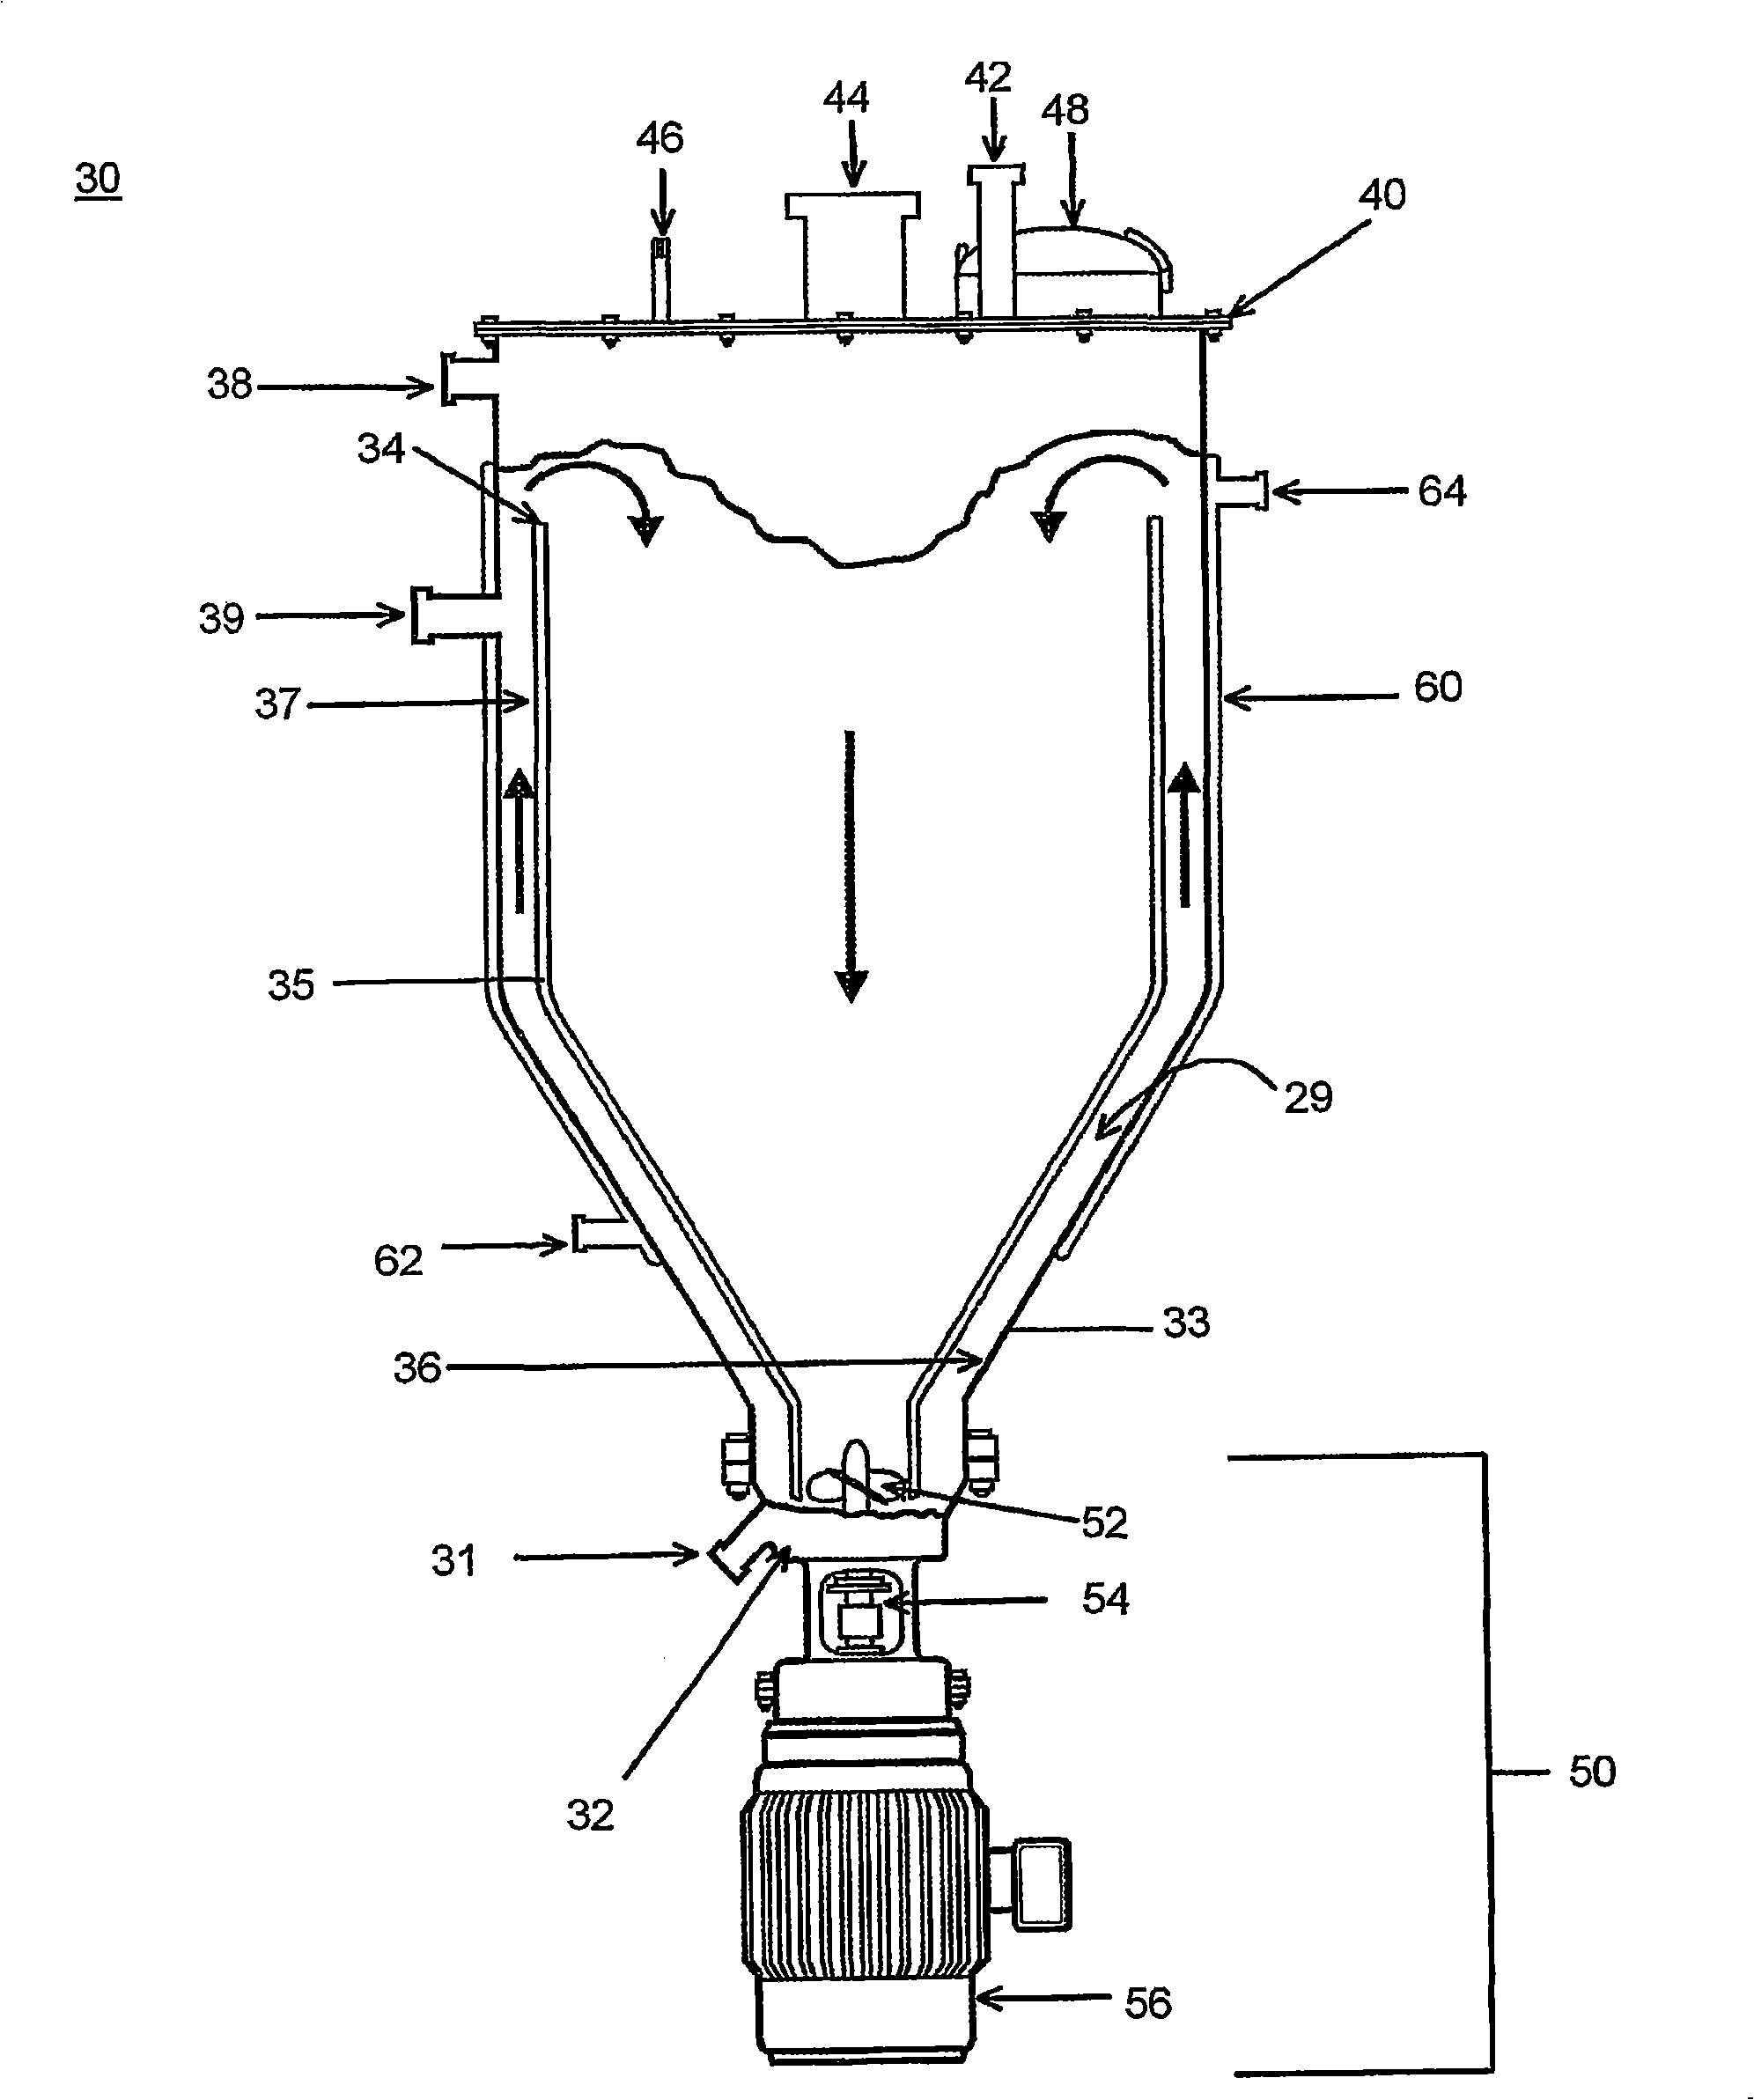 Asphalt reactor and blending system